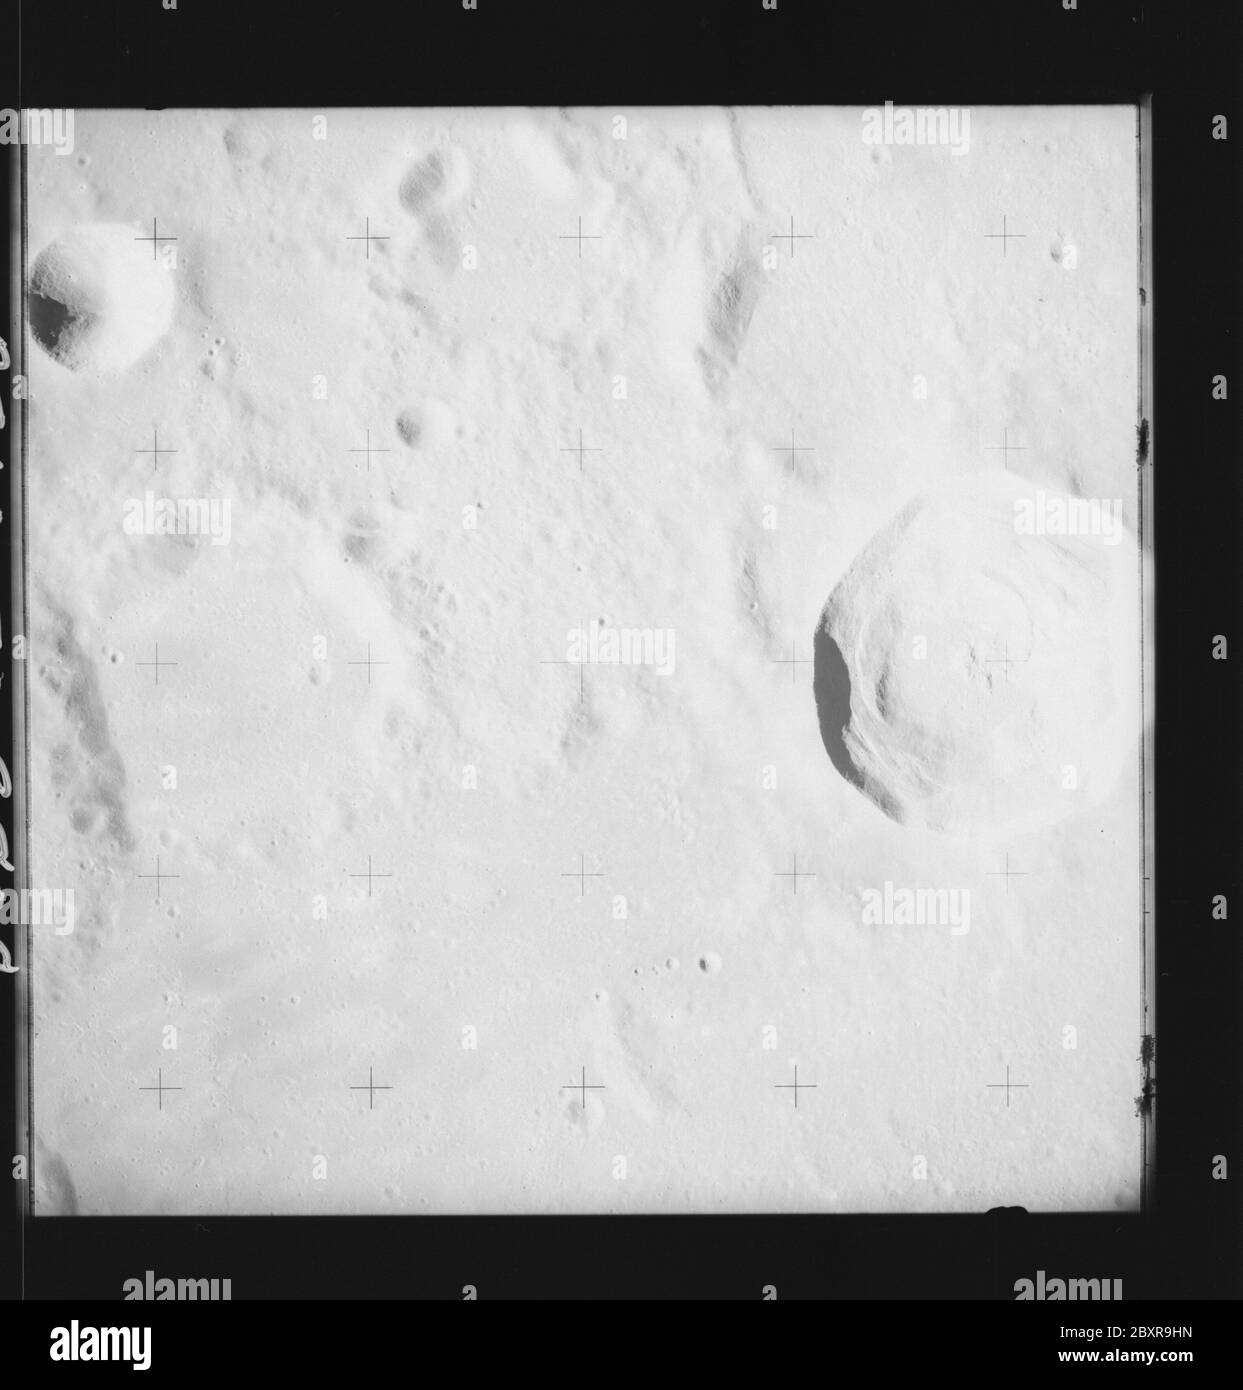 AS14-70-9808 - Apollo 14 - image Mission Apollo 14 - vue sur les cratères C de Lalande et Lalande.; portée et contenu: La base de données originale décrit ceci comme: Description: Vue sur les cratères C de Lalande et Lalande. Des images ont été prises sur la Révolution 26 de la mission Apollo 14. Le magazine original a été étiqueté Q, le type de film était 3400BW (Panatomic-X, noir et blanc), objectif de 80 mm avec une élévation du soleil de 34 degrés. L'échelle de photo approximative était de 1:1,380,000. La latence du point principal était de 4.5S par Longitude 7.5W,avec une inclinaison verticale de la caméra. Descripteurs : vol Apollo 14, Lune (planète) catégories : OBS lunaire Banque D'Images